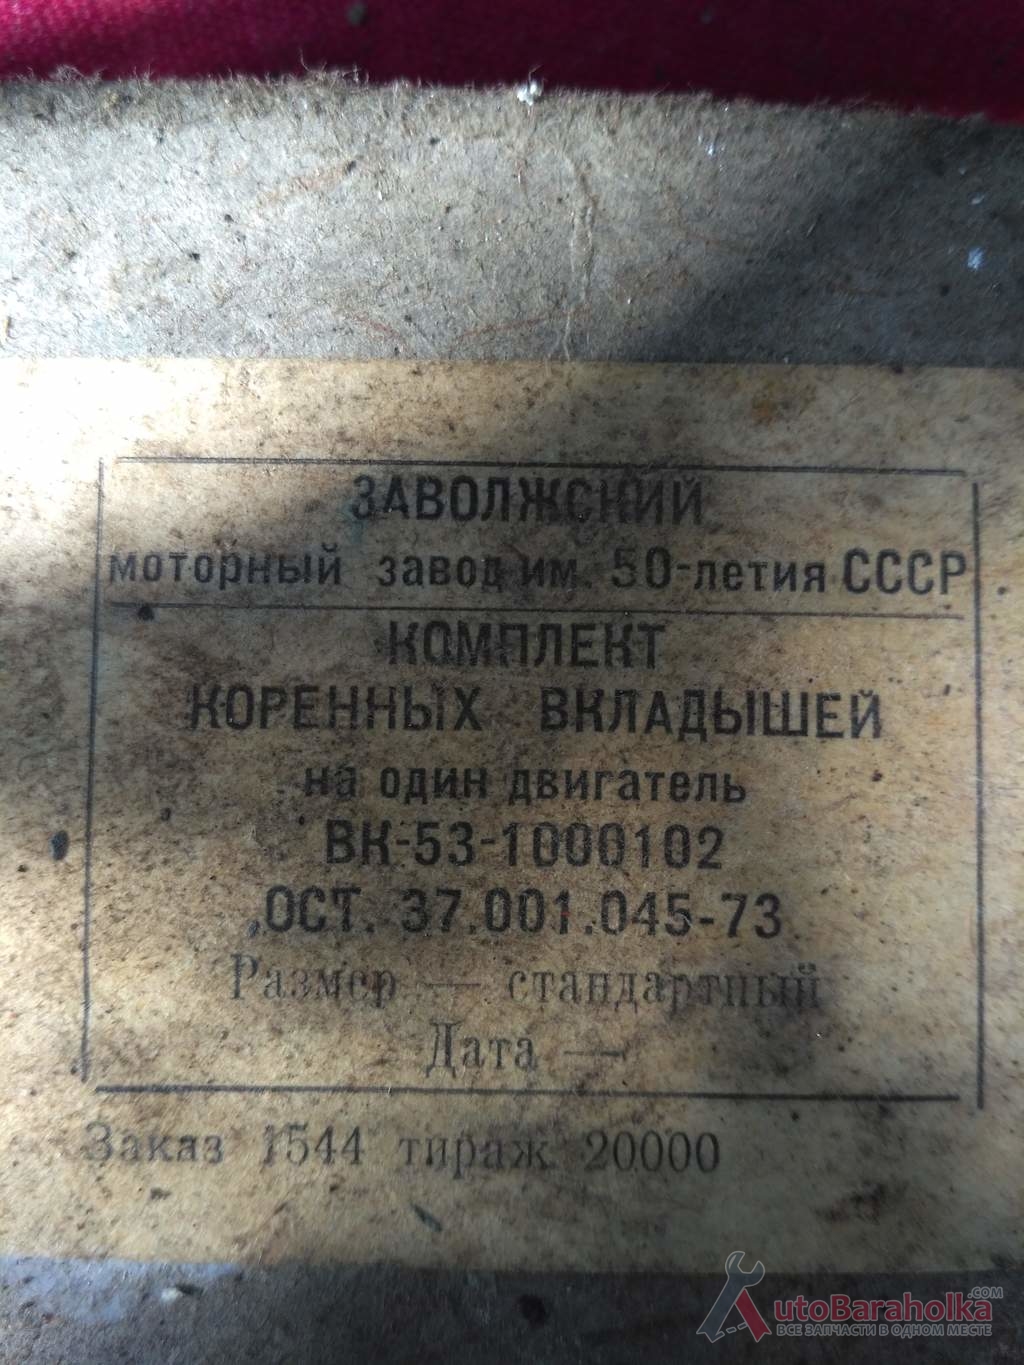 Продам Комплект коренных вкладышей ГАЗ-53 стандартный Краматорск